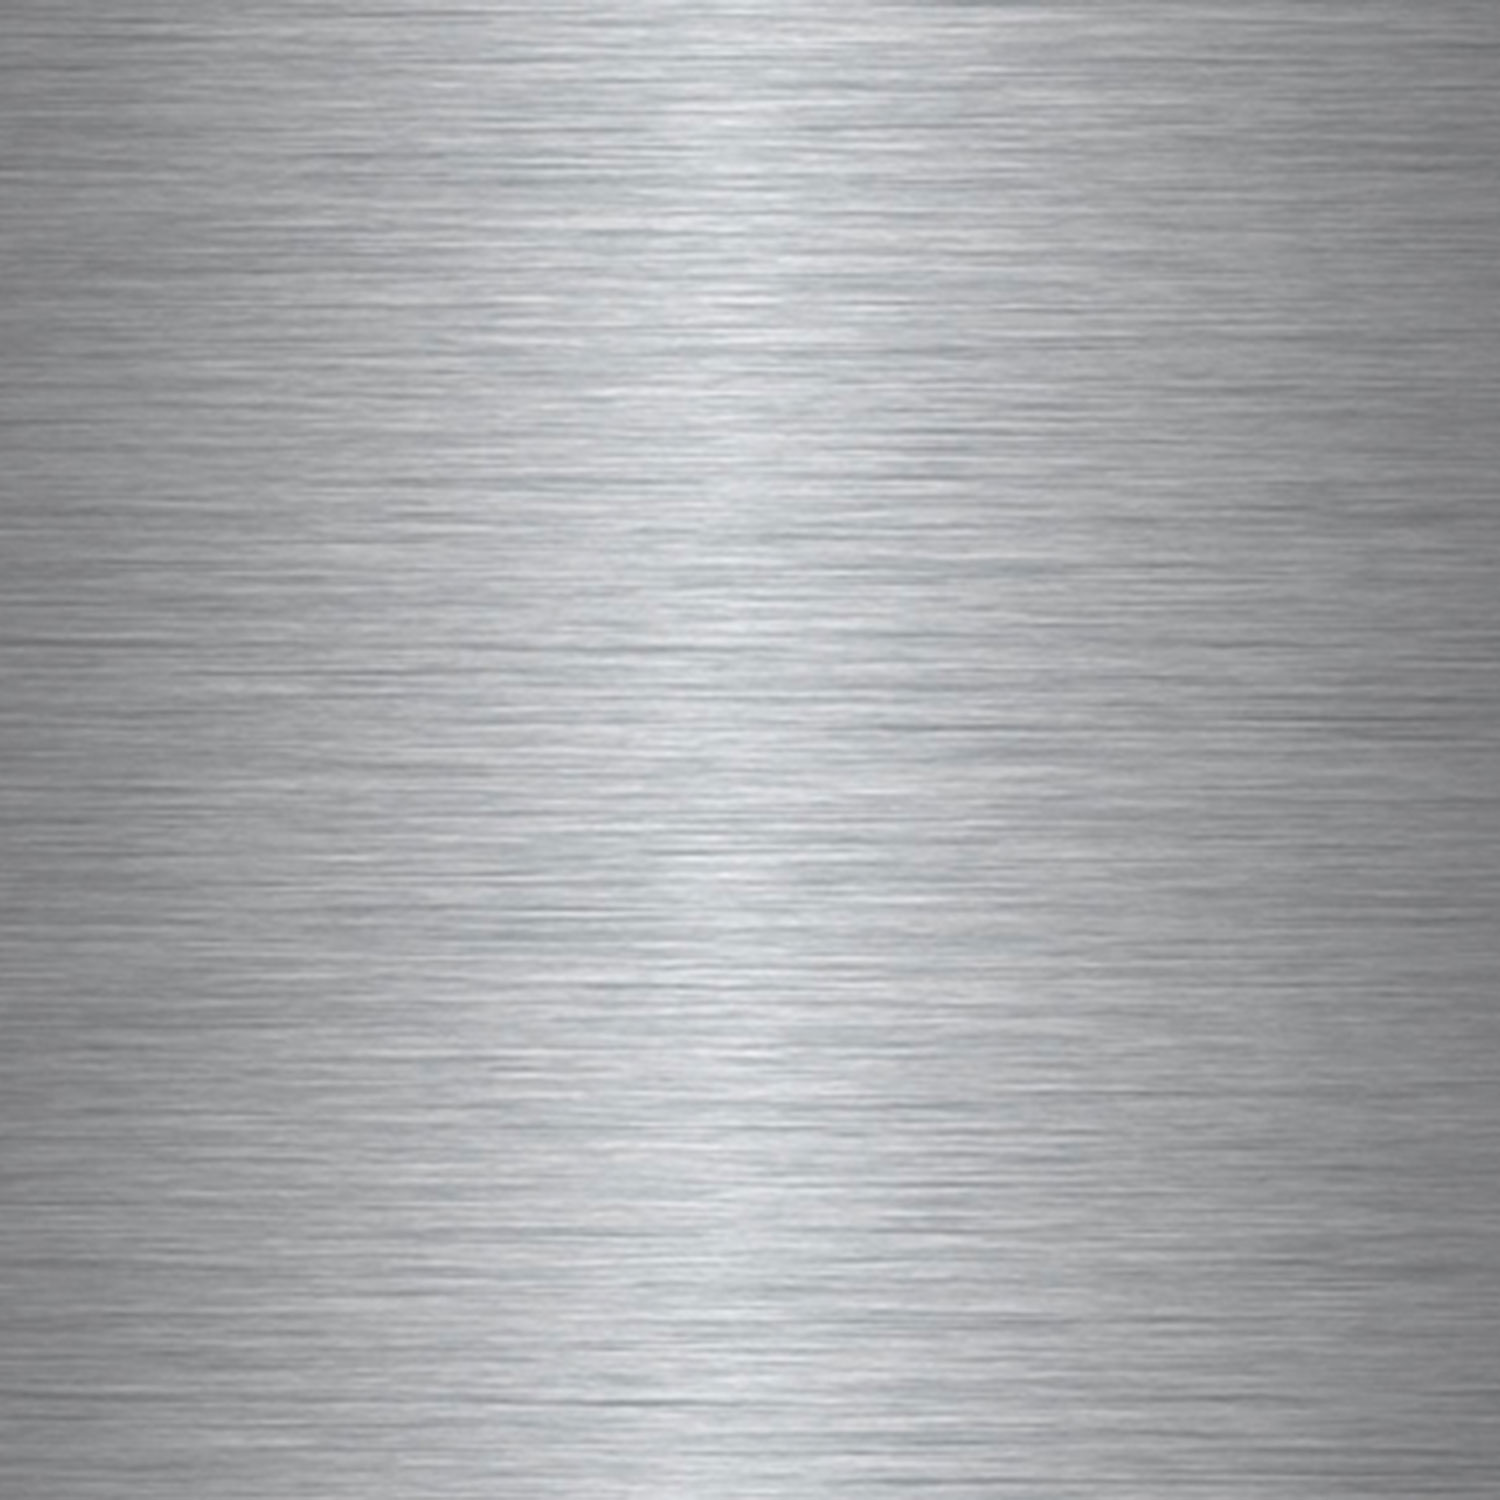 Алюминий для сублУФ SU31 Silver Brushed (СЕРЕБРО ШЛИФОВАННОЕ) 305х610*0,55мм